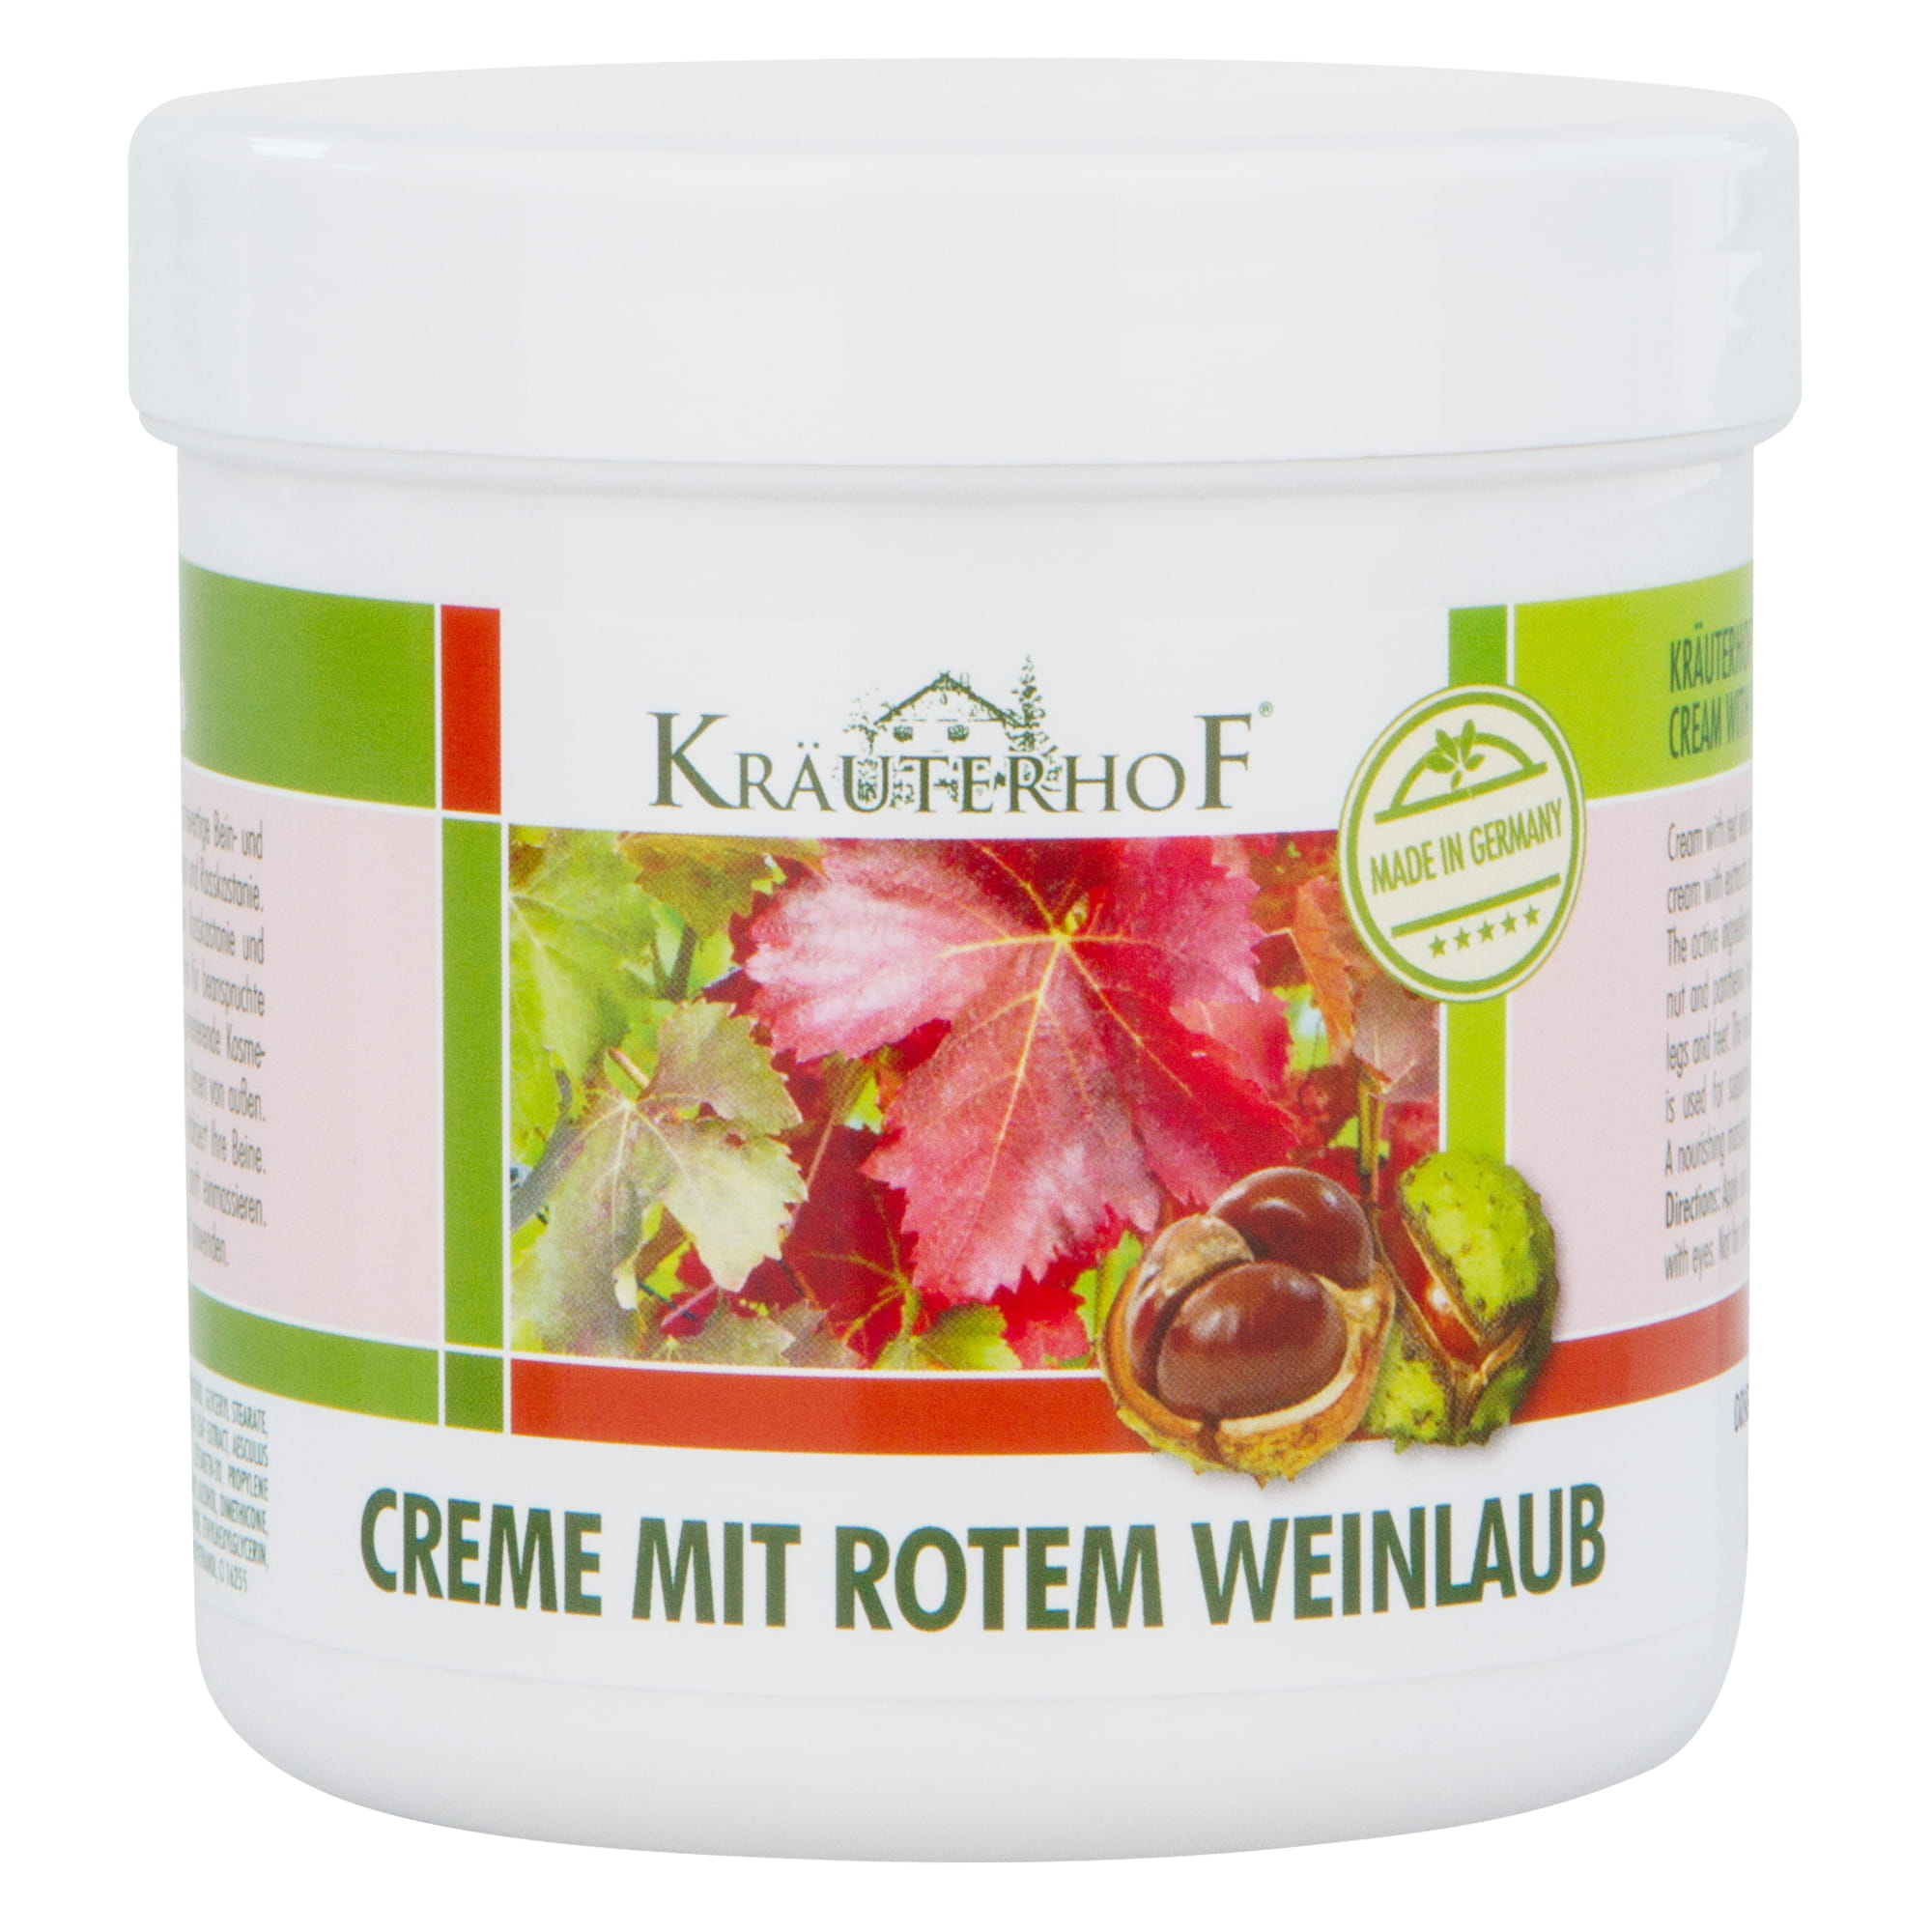 Kräuterhof® Creme mit rotem Weinlaub 